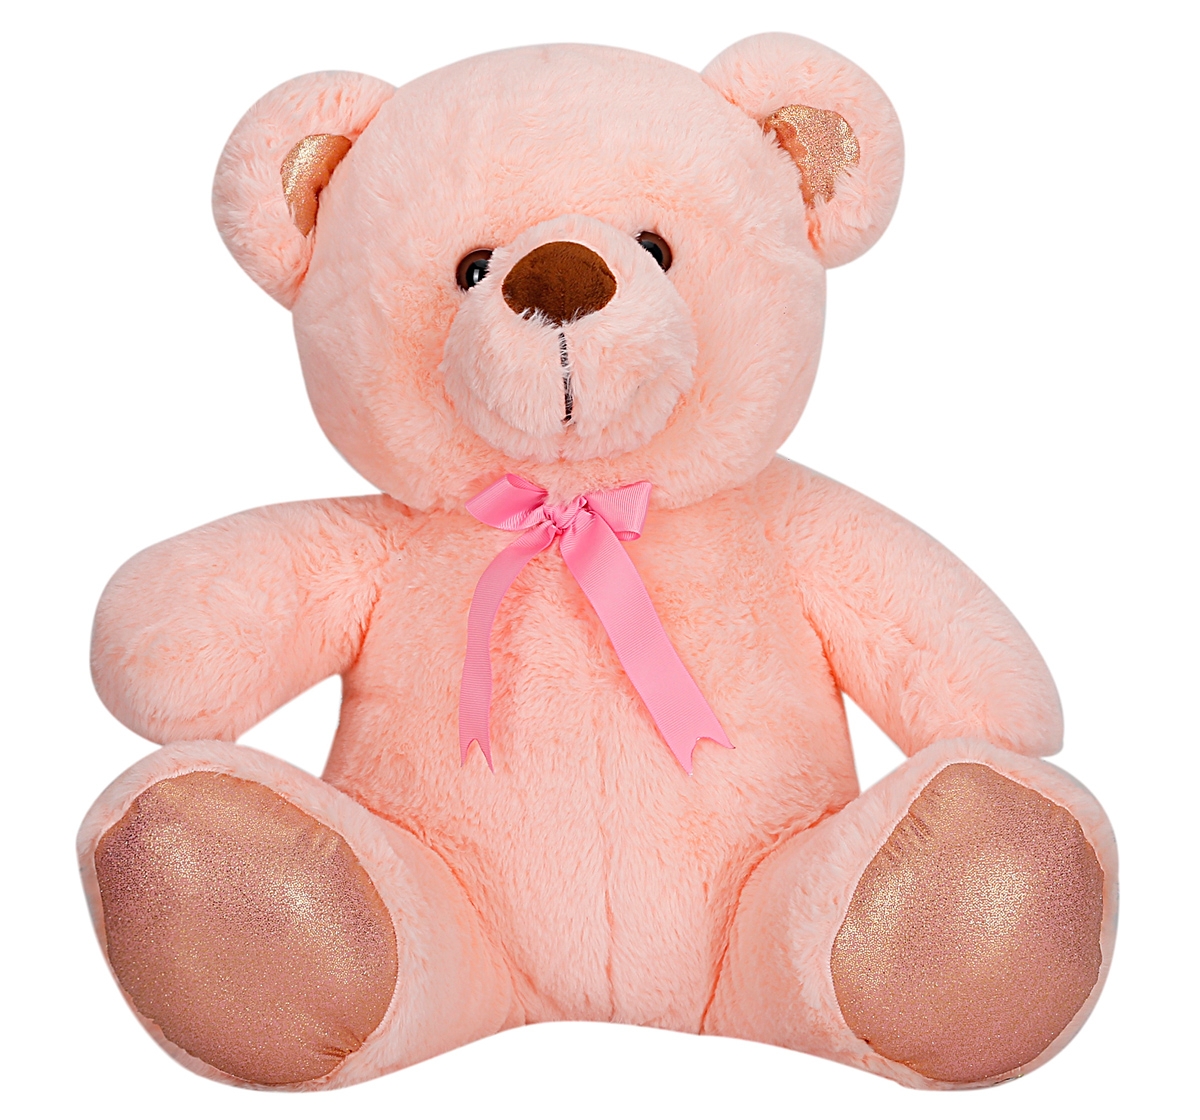 Fuzzbuzz | Fuzzbuzz Bear 45cm Attrative Soft Toy for Kids 3Y+, Multicolour